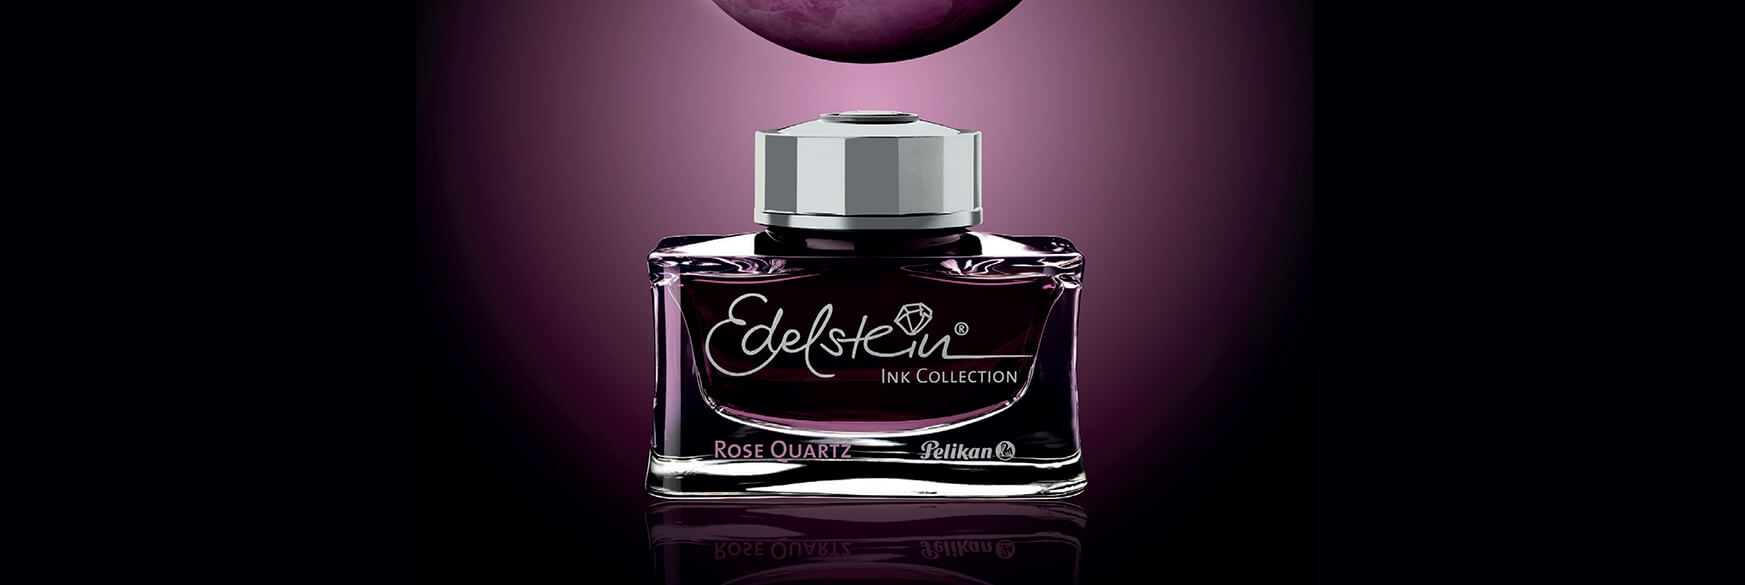 Pelikan Edelstein Ink of the Year